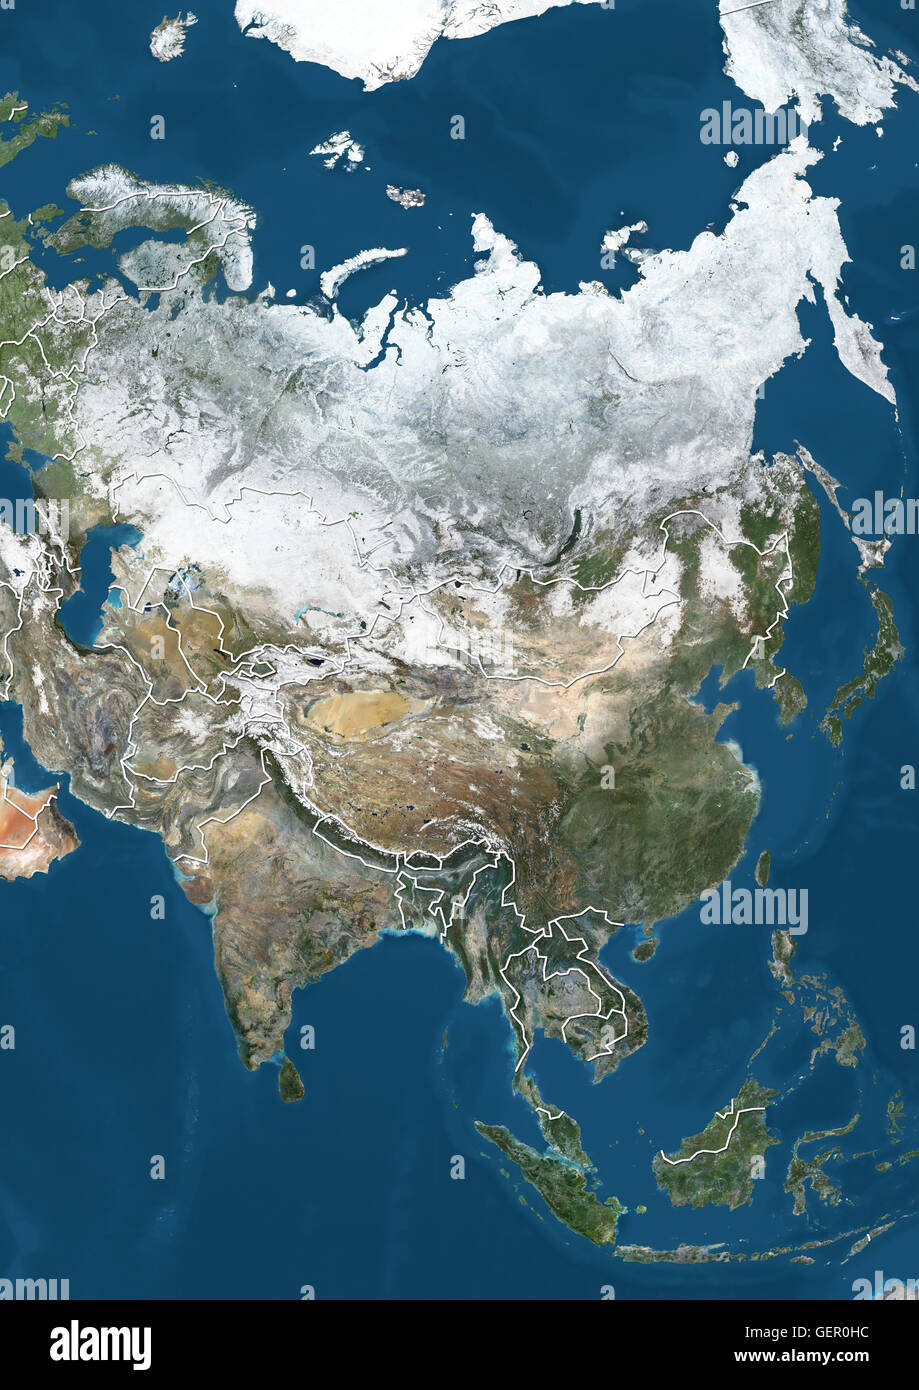 Satellitenbild von Asien im Winter, mit teilweise Schneedecke (mit Ländergrenzen). Dieses Bild wurde aus Daten von Satelliten Landsat 7 & 8 zusammengestellt. Stockfoto